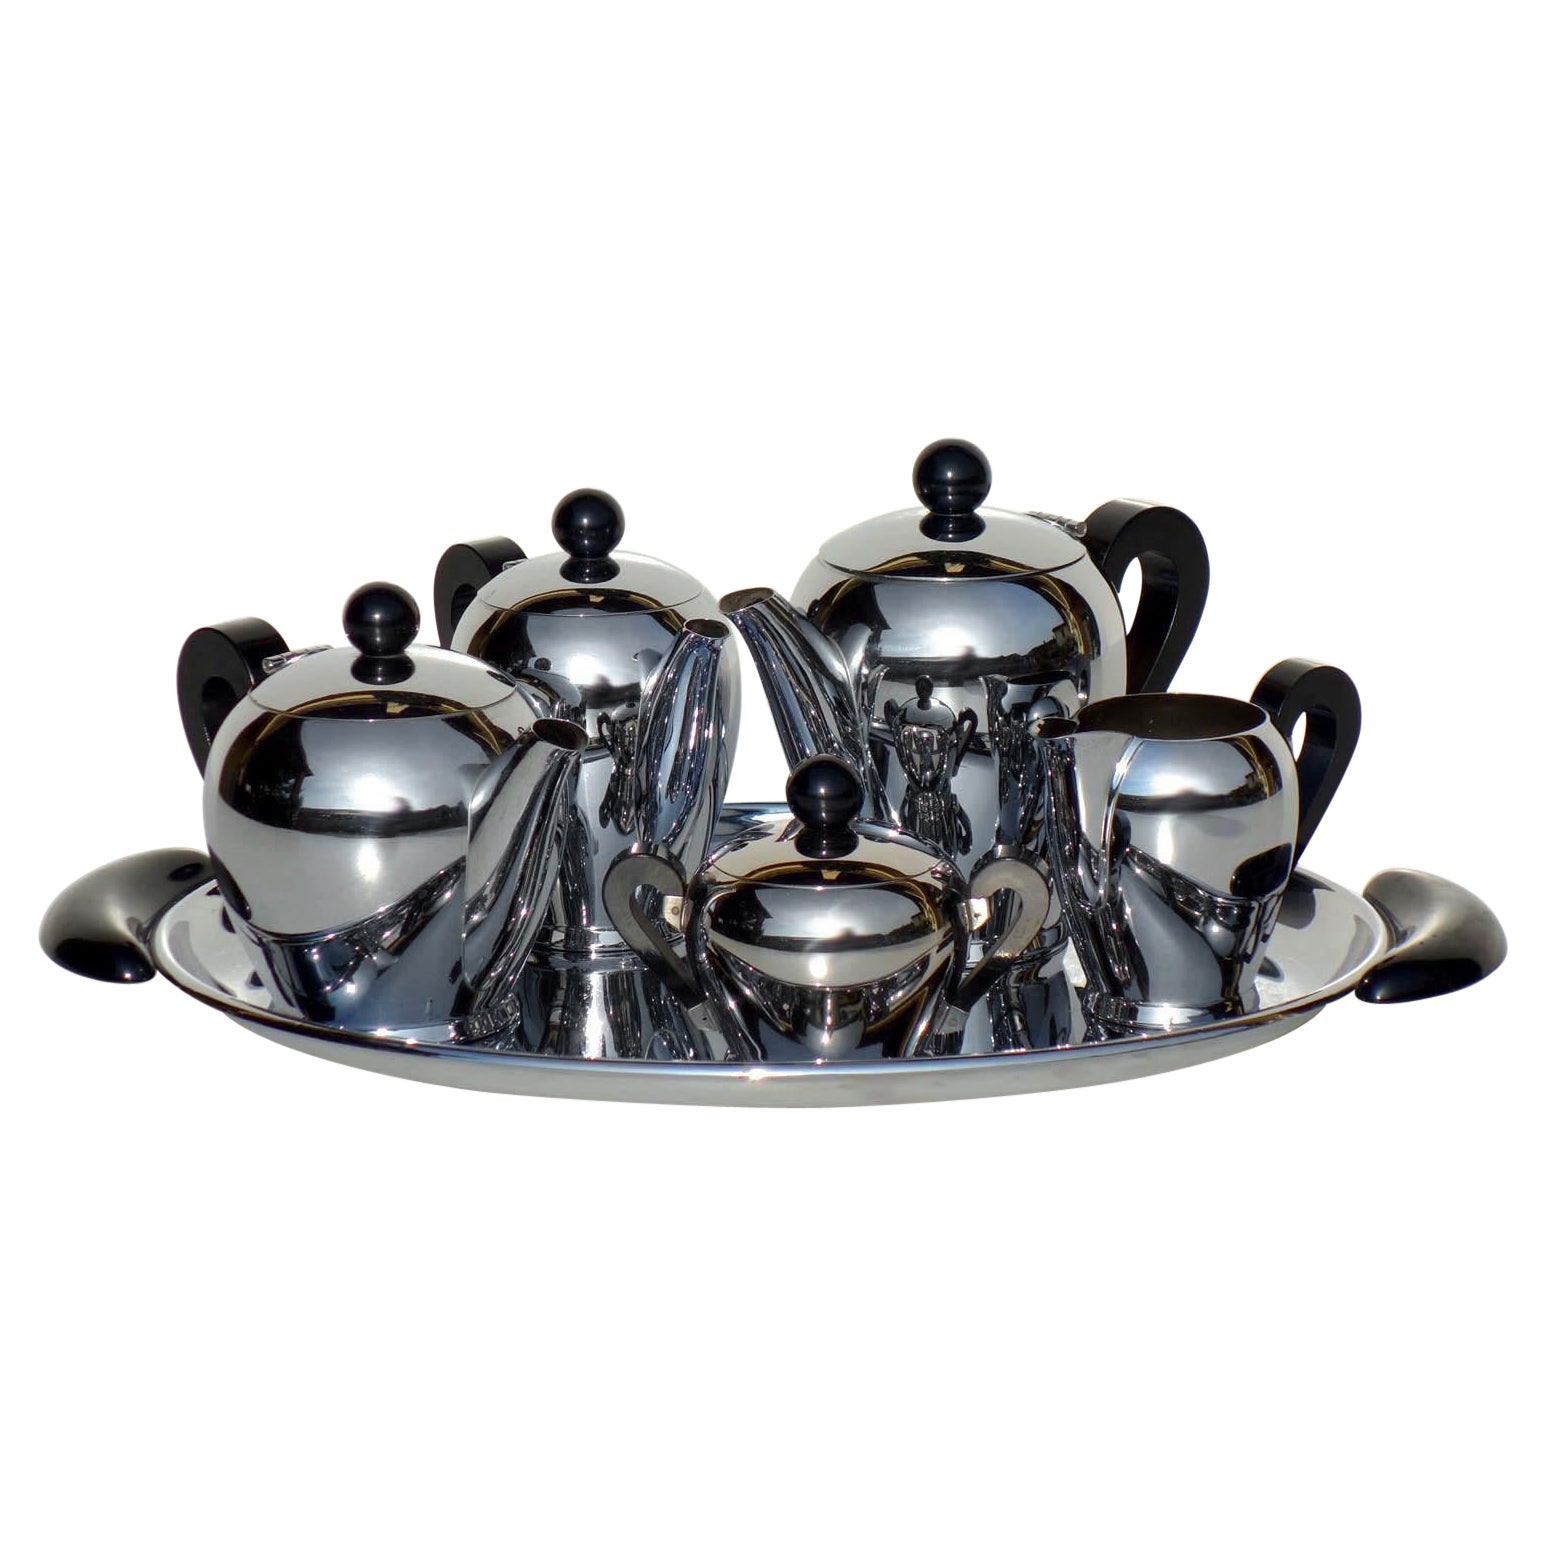 "Bombè" Carlo Alessi 1945 Italian Design Steel Metal Tea and Coffee Set For Sale